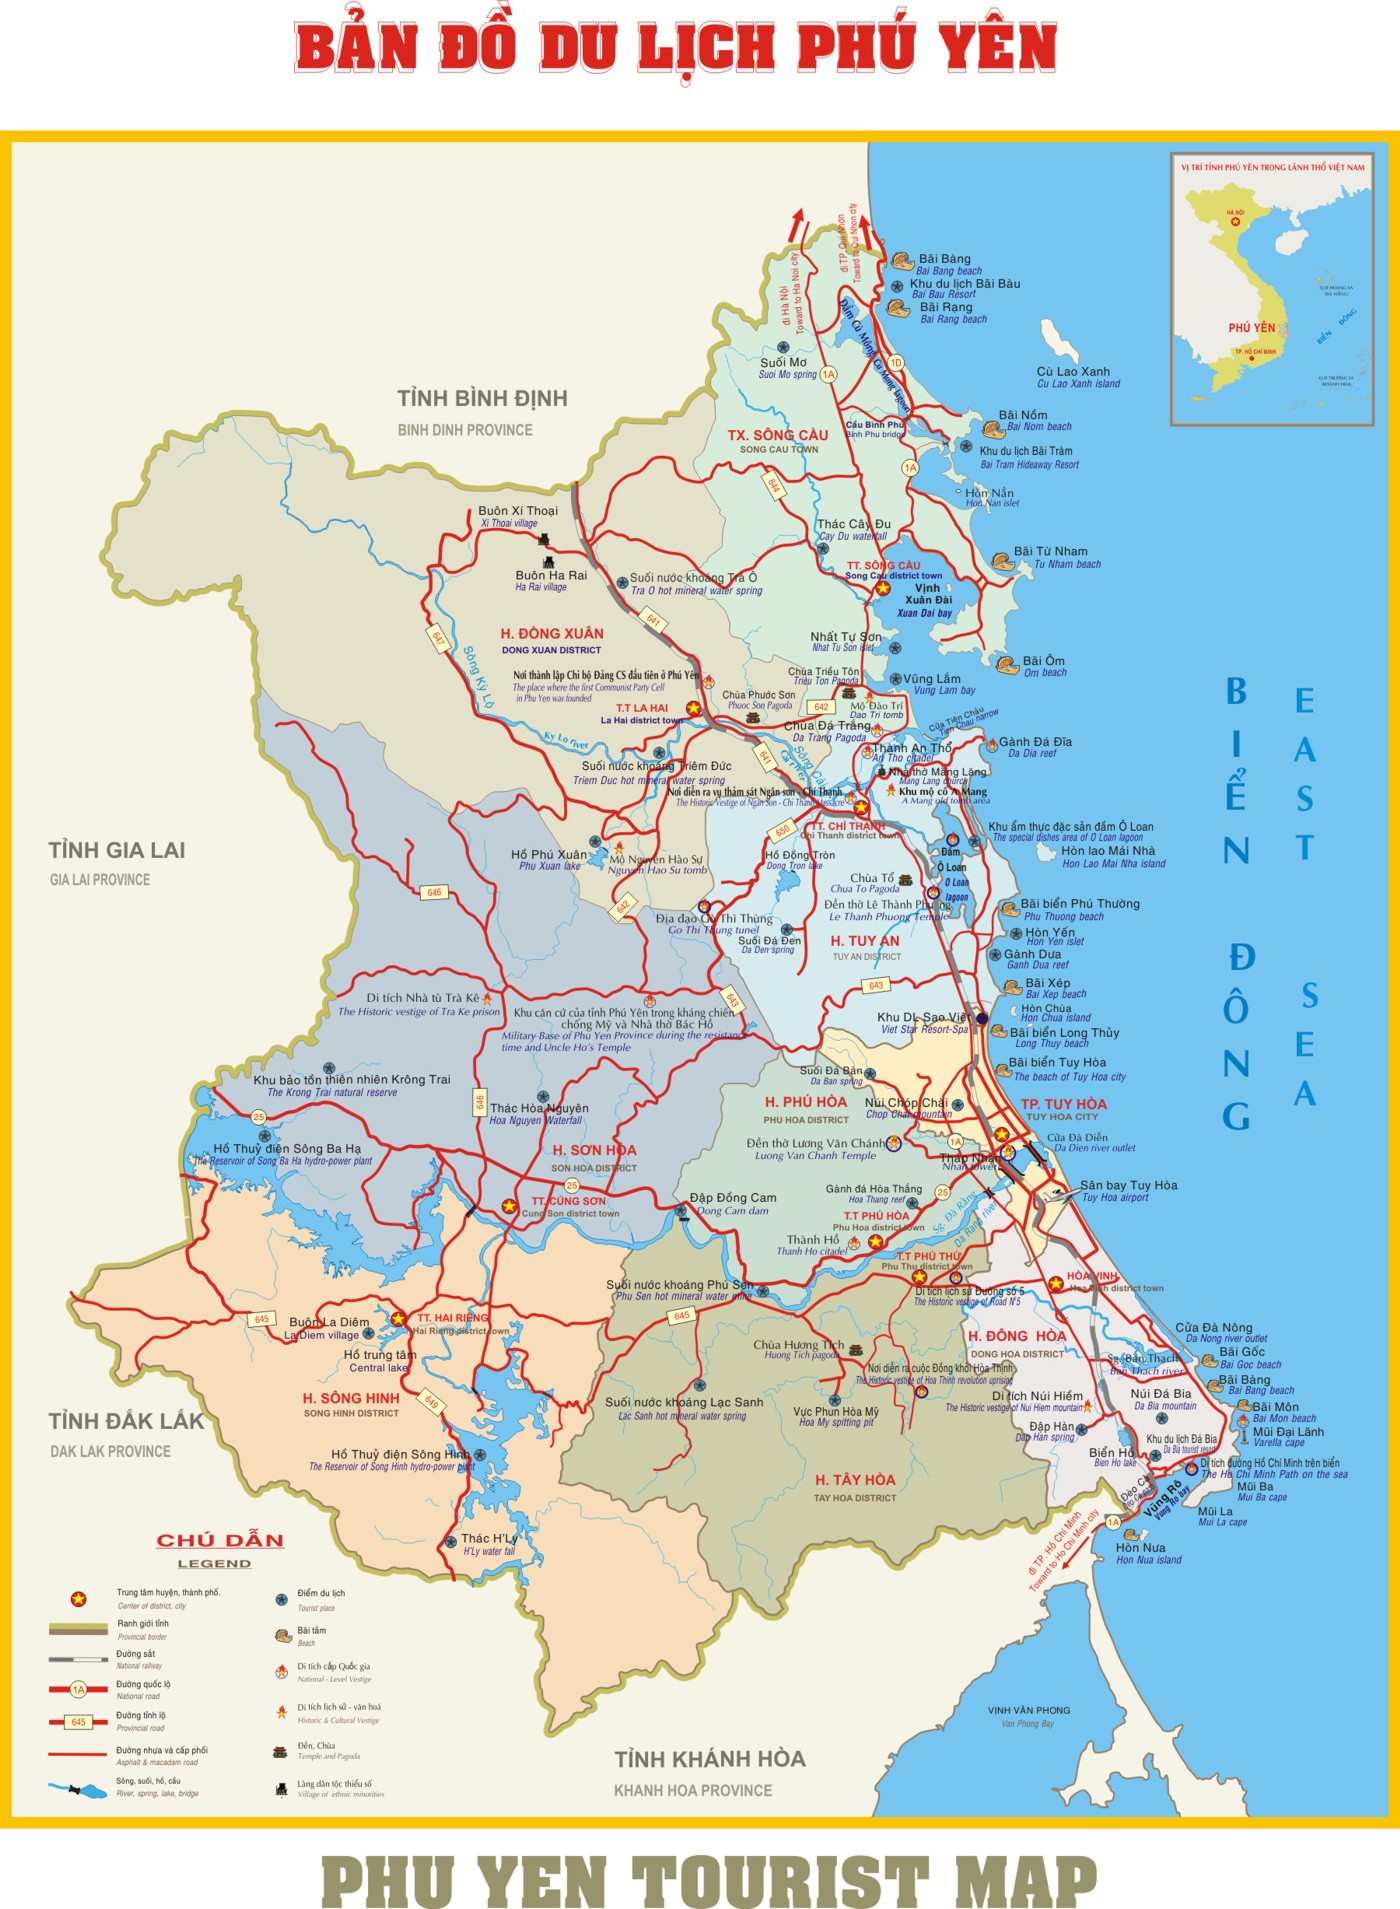 Nằm trong nhóm các tỉnh đang phát triển mạnh nhất cả nước, Phú Yên tự hào với bản đồ hành chính tỉnh năm 2024 sắp tới đây. Đây sẽ là cơ hội tuyệt vời để du khách khám phá những danh lam thắng cảnh đẹp như Bãi Xép, cuộc đua xe boong-ke hấp dẫn, hay nhiều lễ hội truyền thống độc đáo.